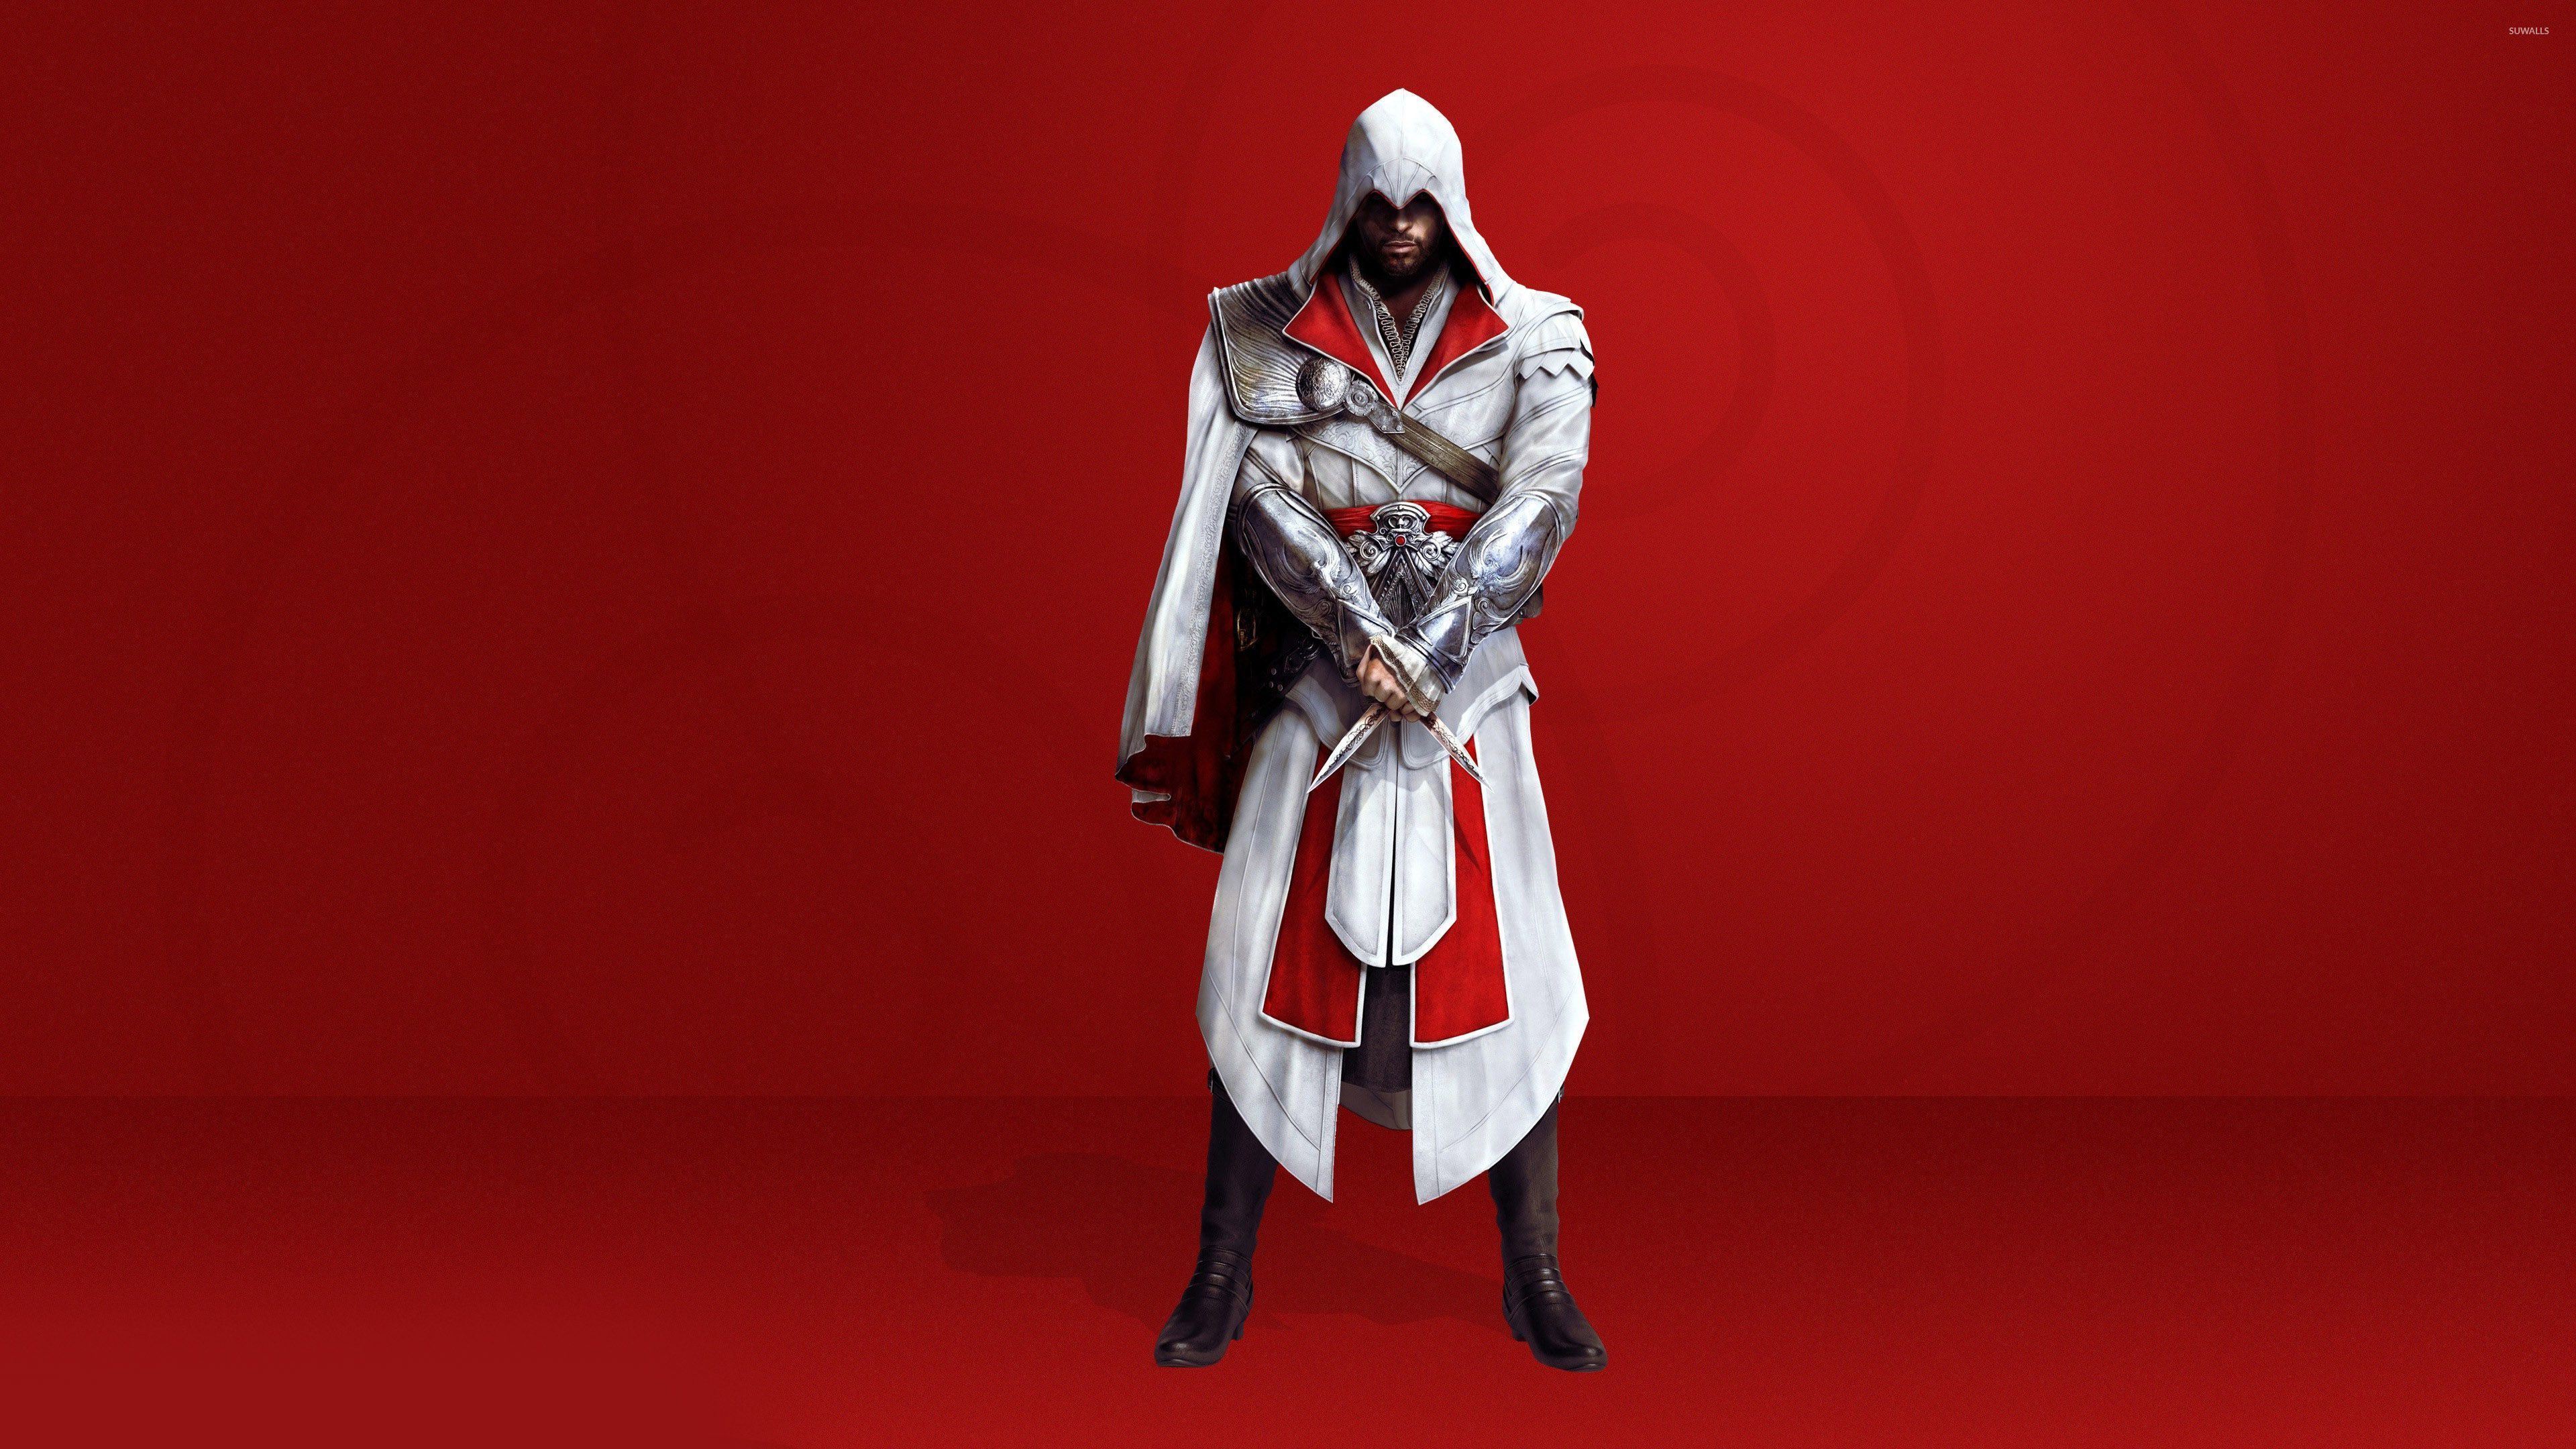 Assassins Creed Brotherhood , HD Wallpaper & Backgrounds